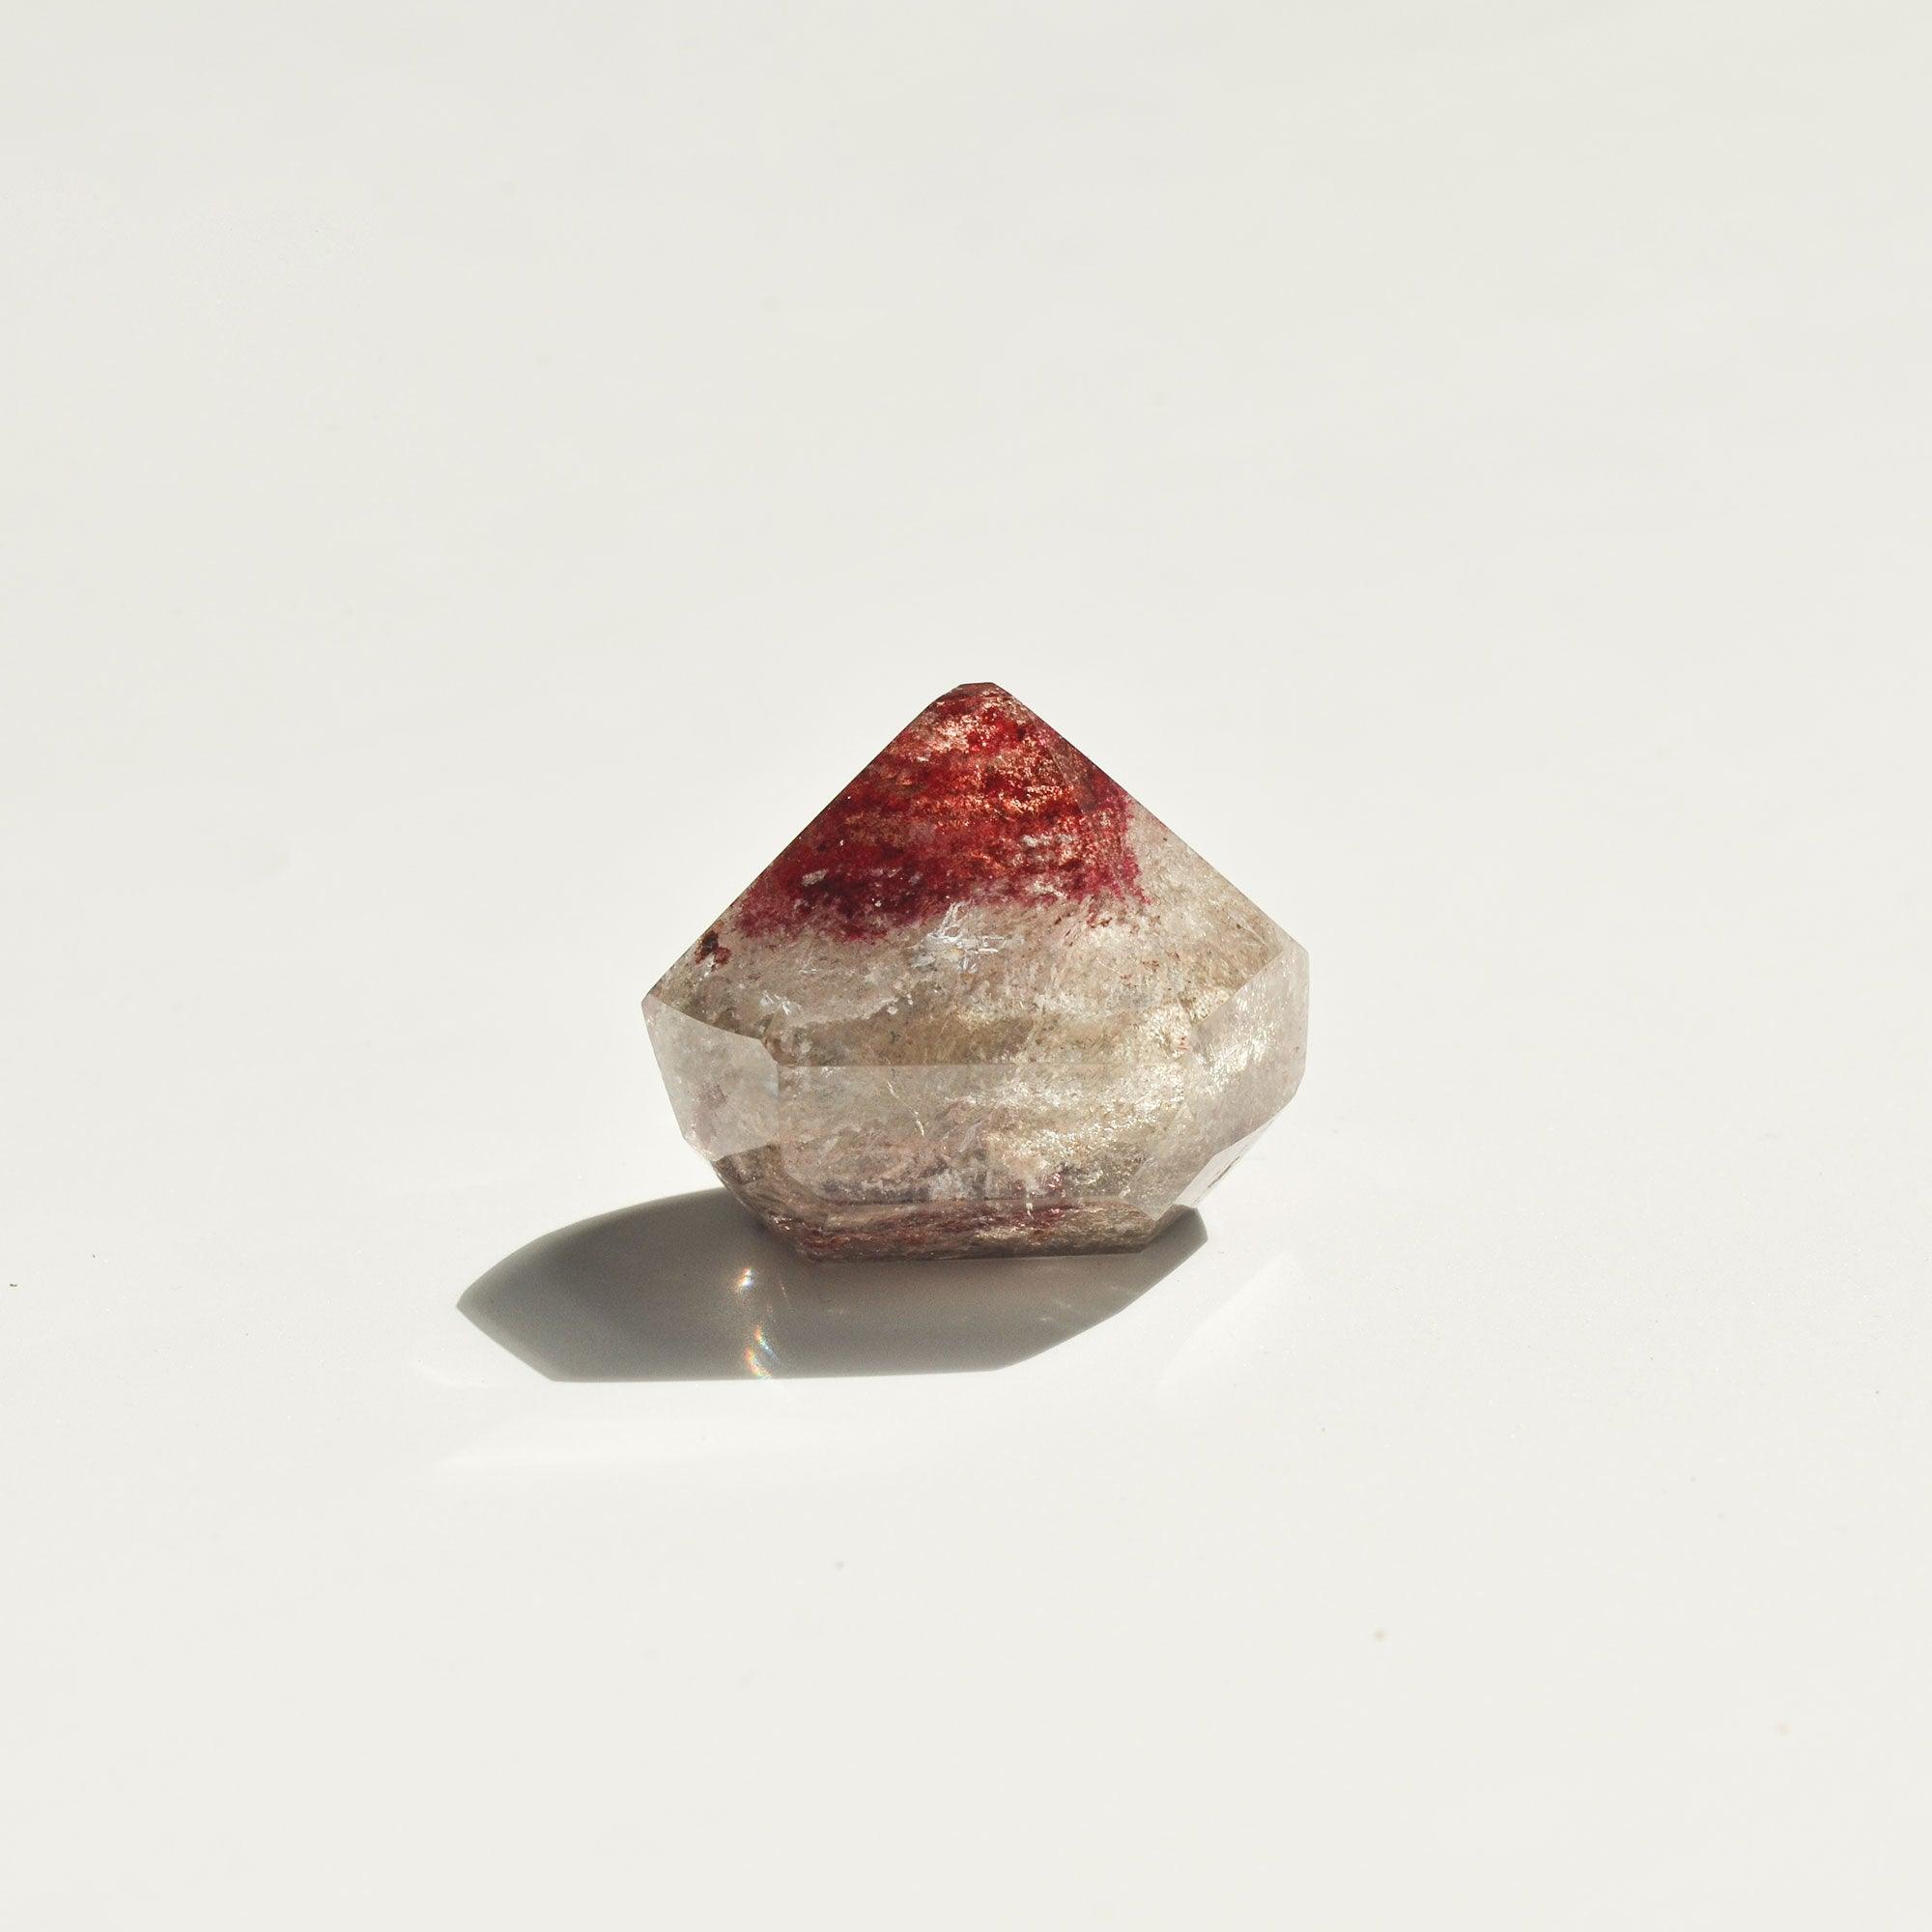 transparent and red diamond shaped phantom quartz